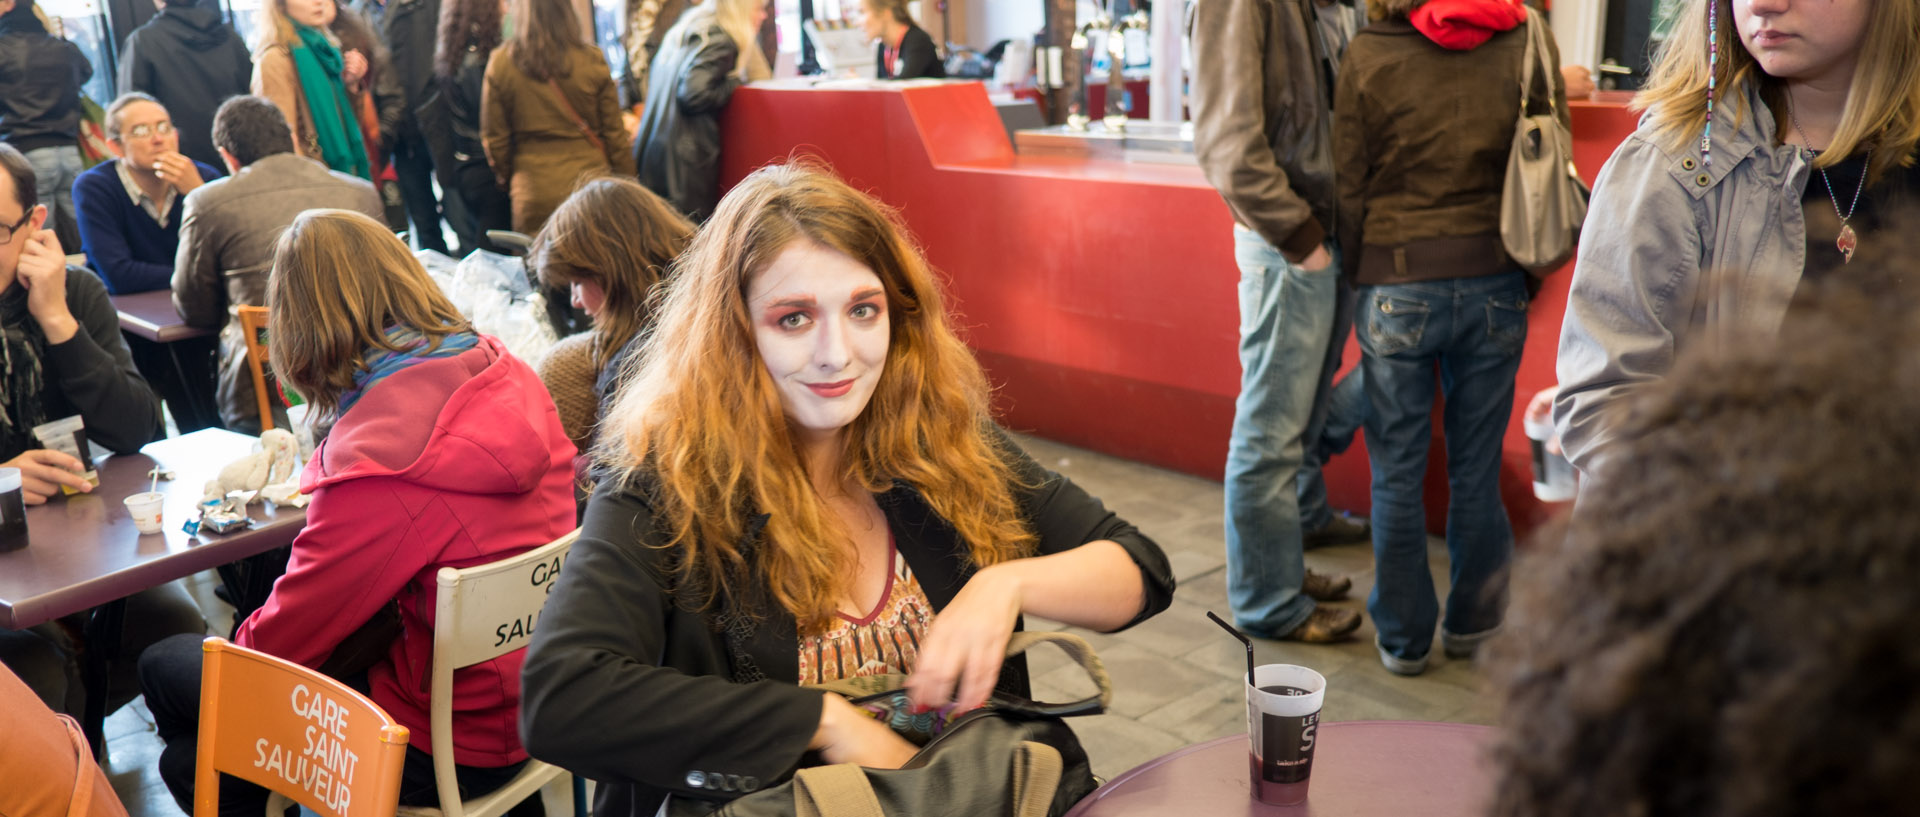 Jeune fille maquillée dans le café de la Gare Saint-Sauveur, à Lille.